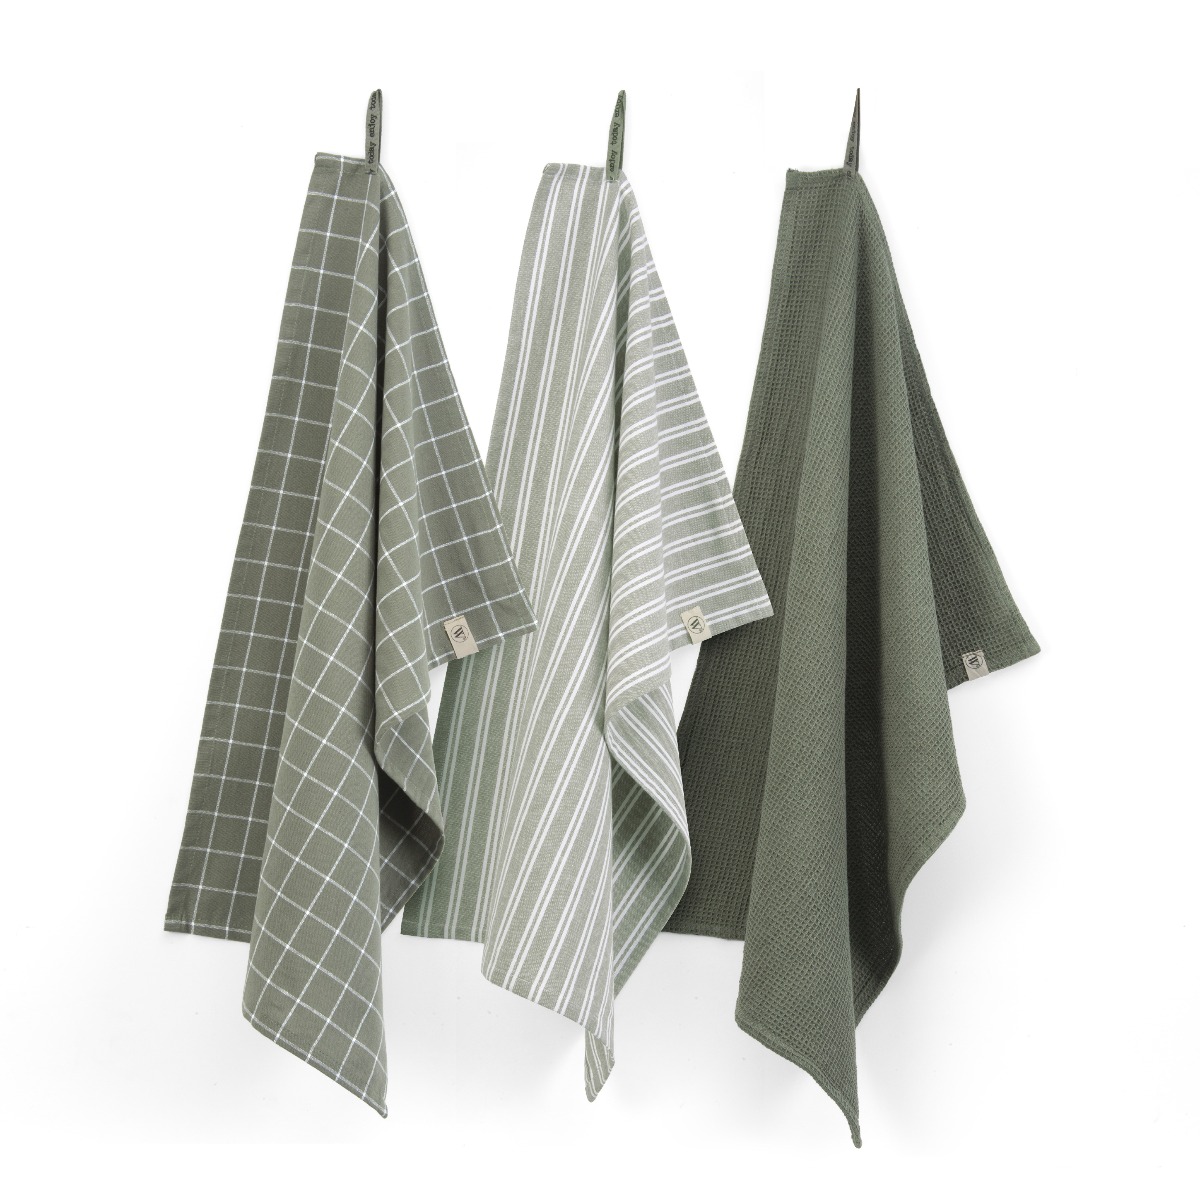 WALRA Keukenset Dry w. Cubes Uni, Stripes & Blocks Legergroen - 3x 50x70 cm